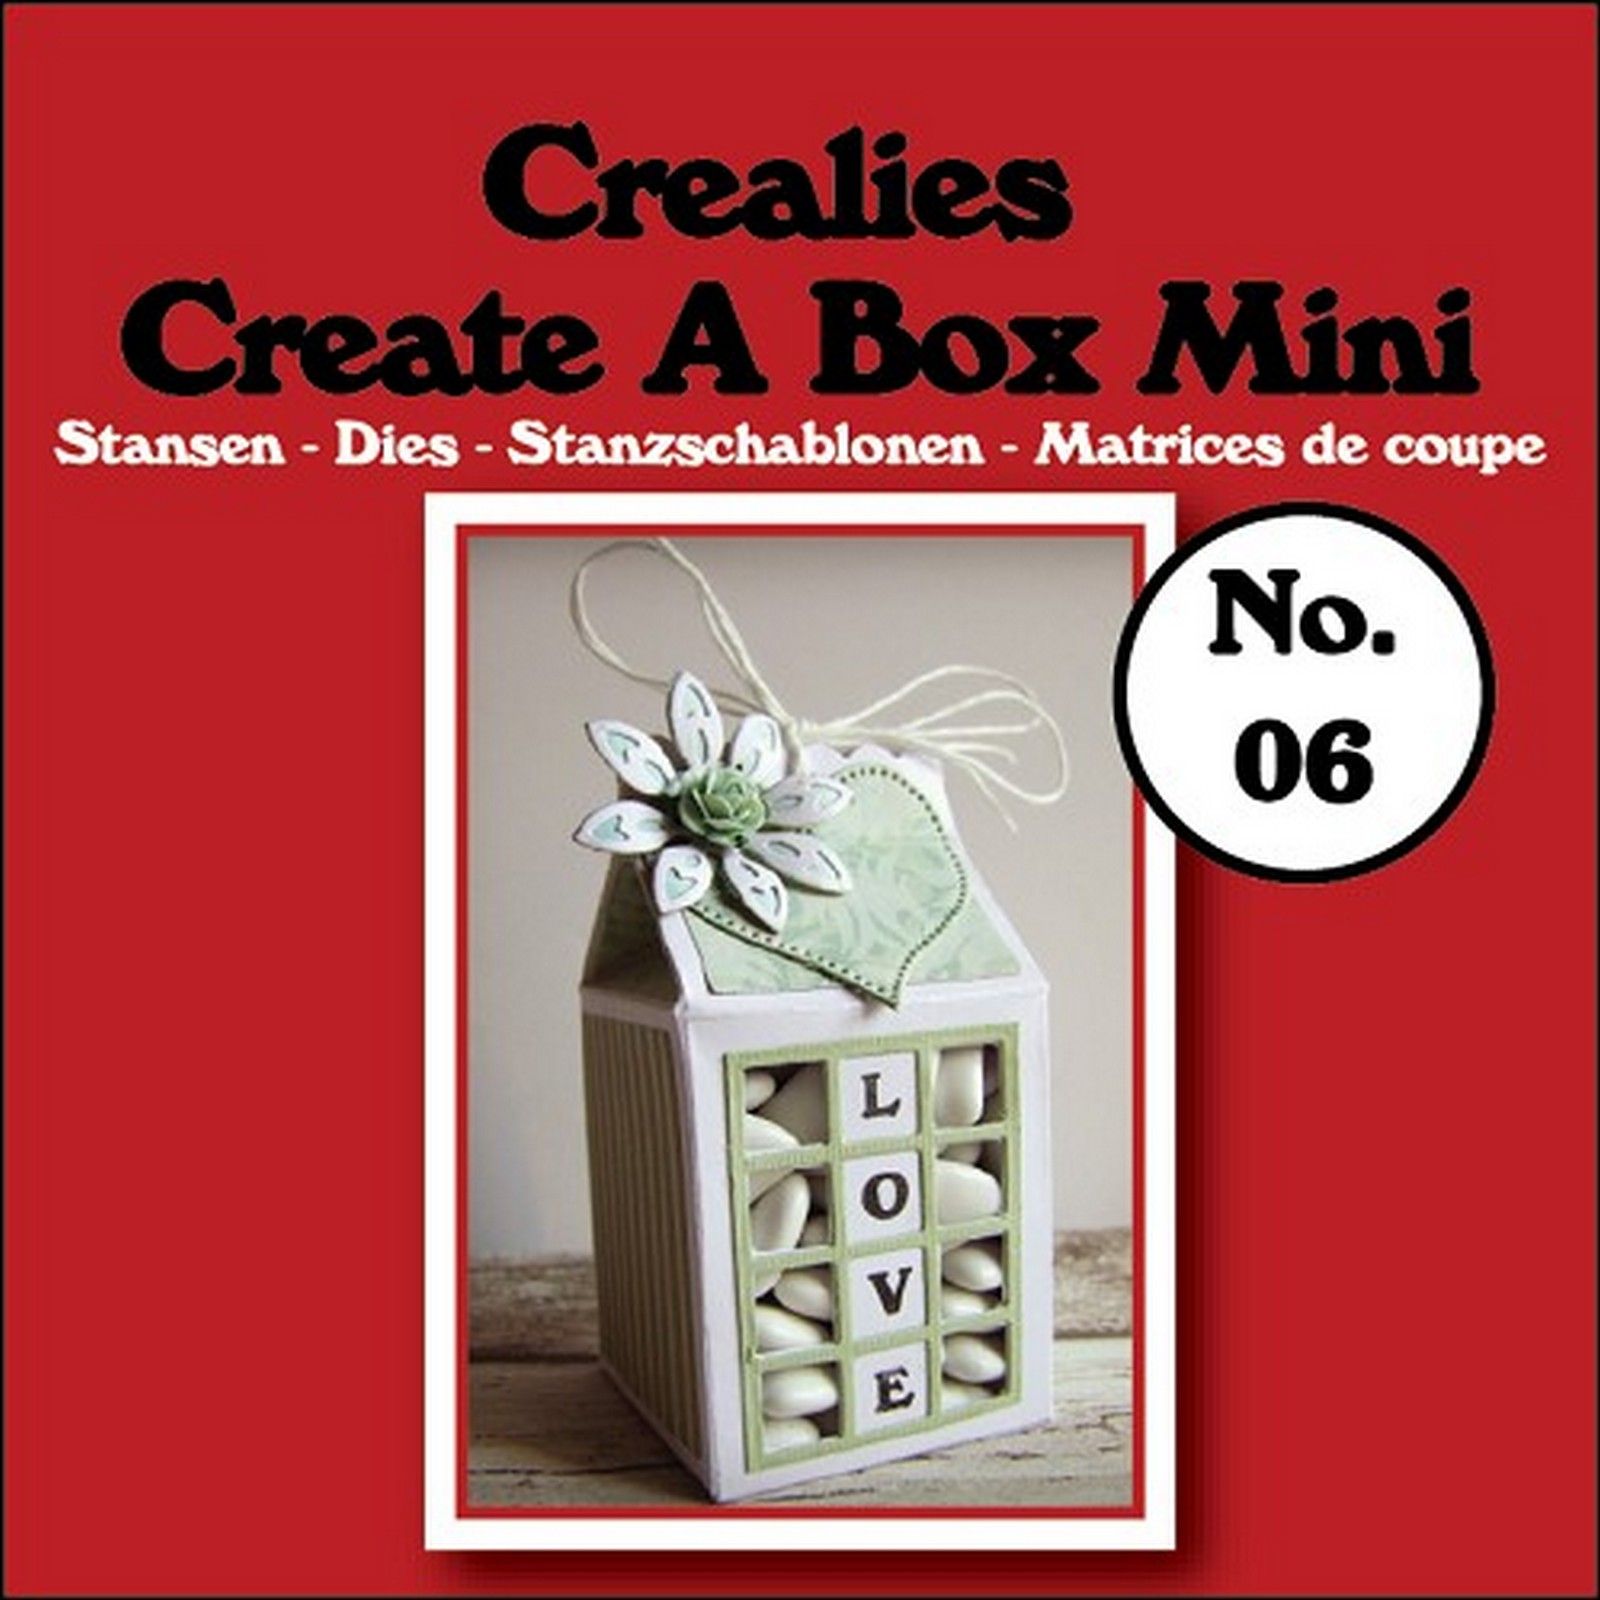 Crealies • Create A Box mini plantilla de corte no.06 Milk carton